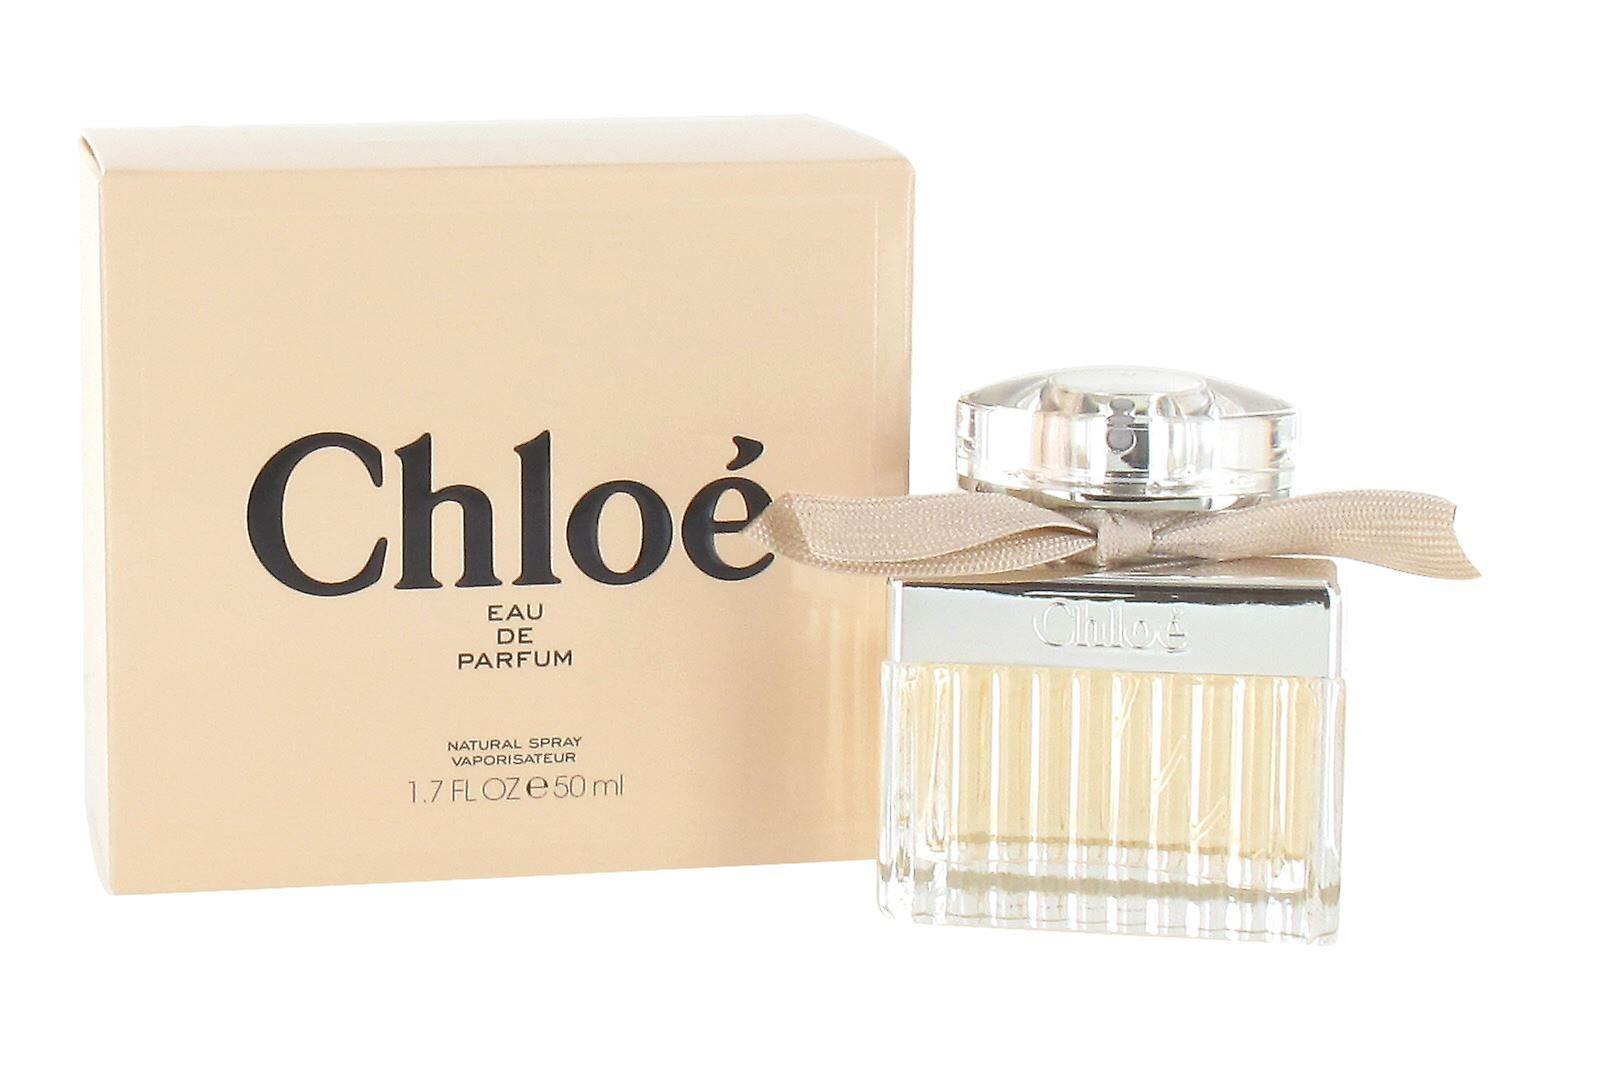 Chloe Eau de parfum natural spray 50ml